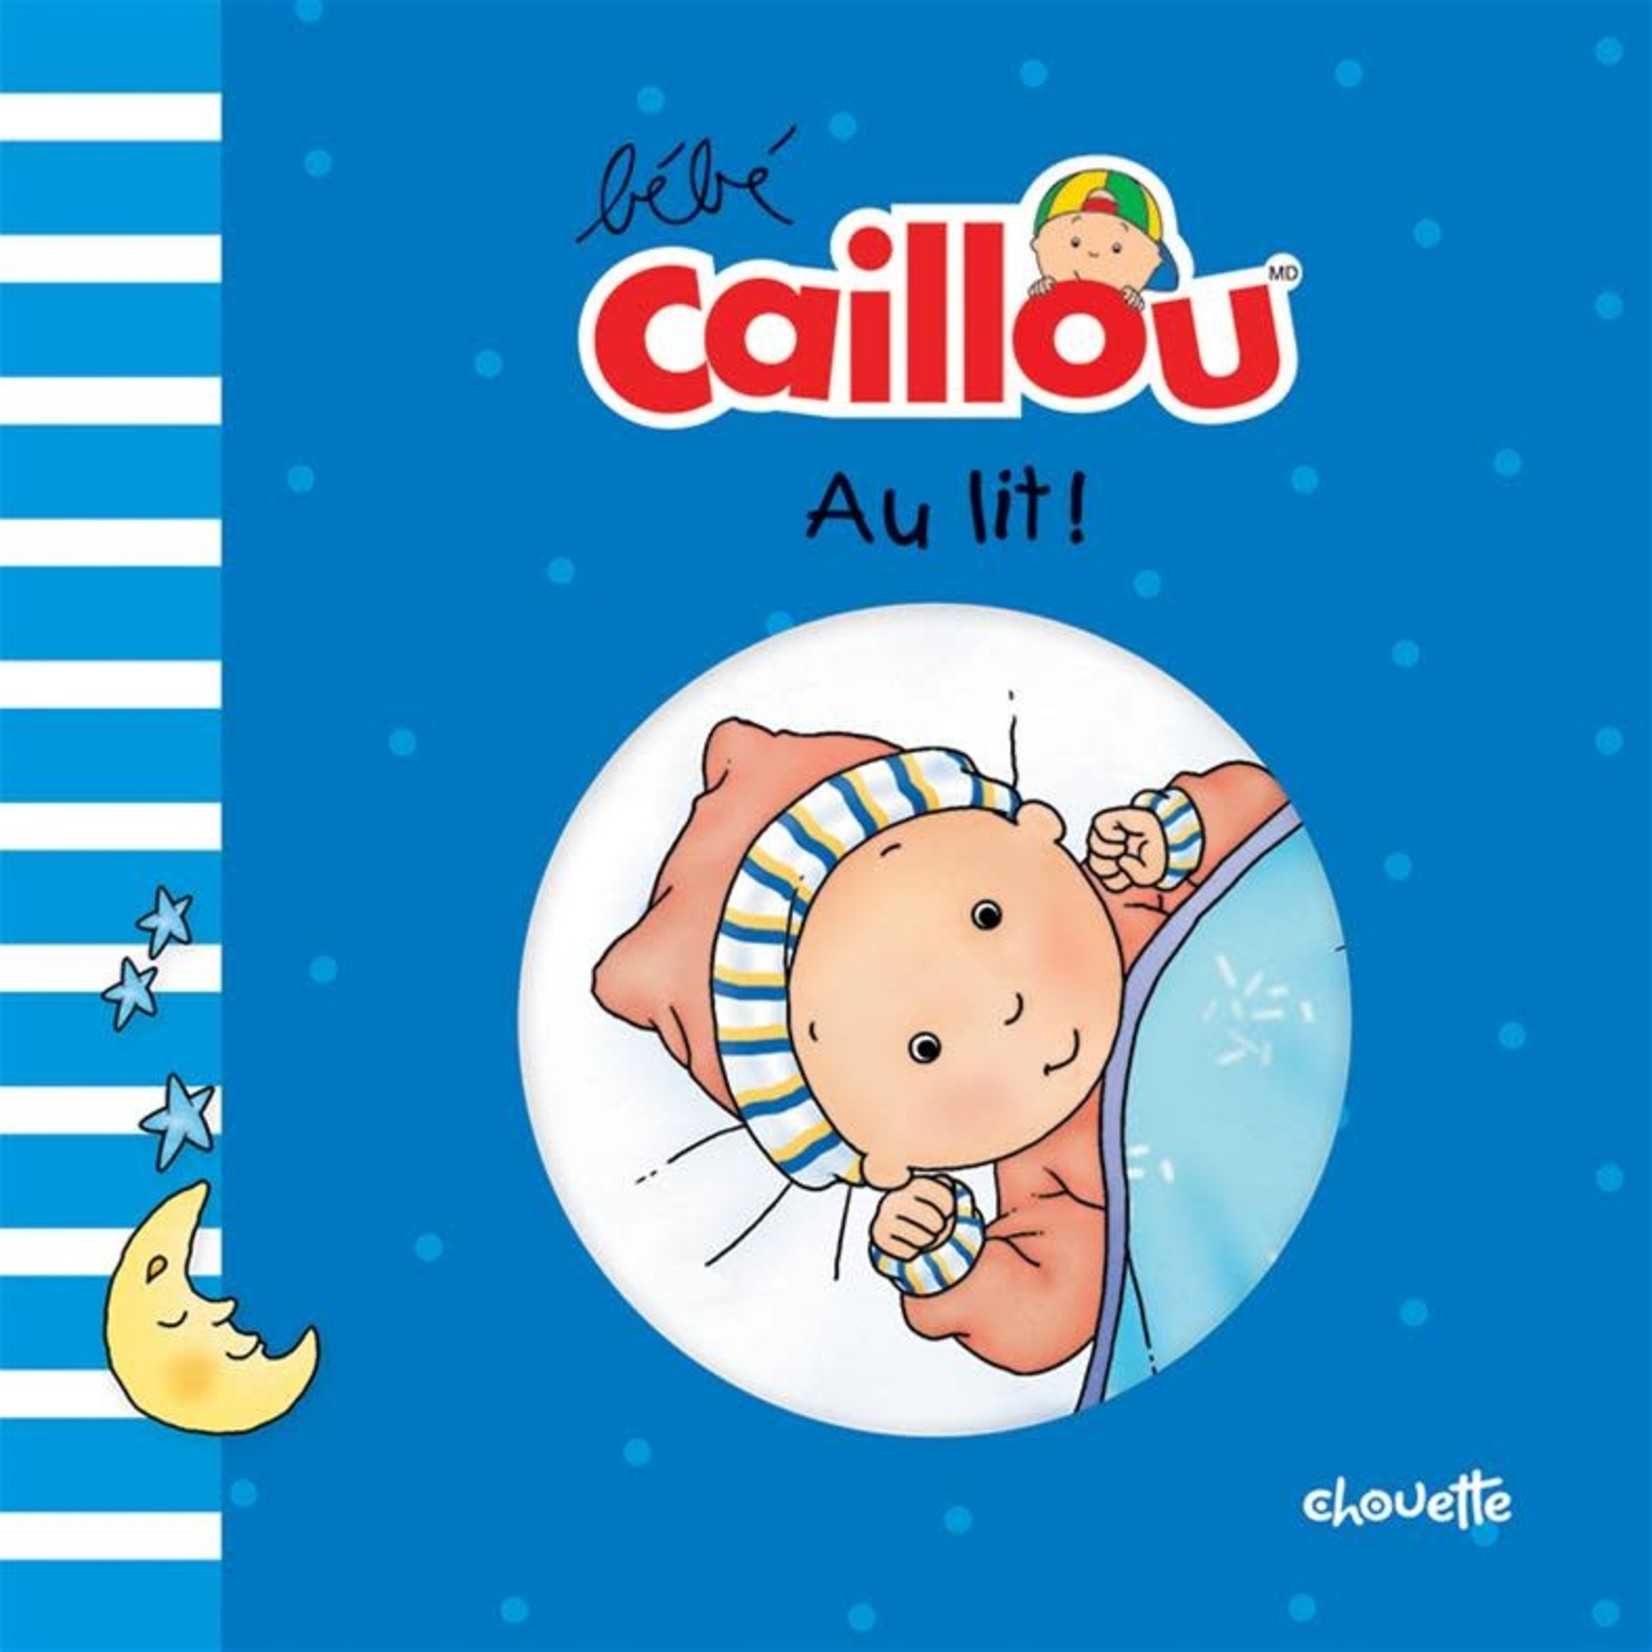 Édition Chouette Bébé Caillou - Au lit!